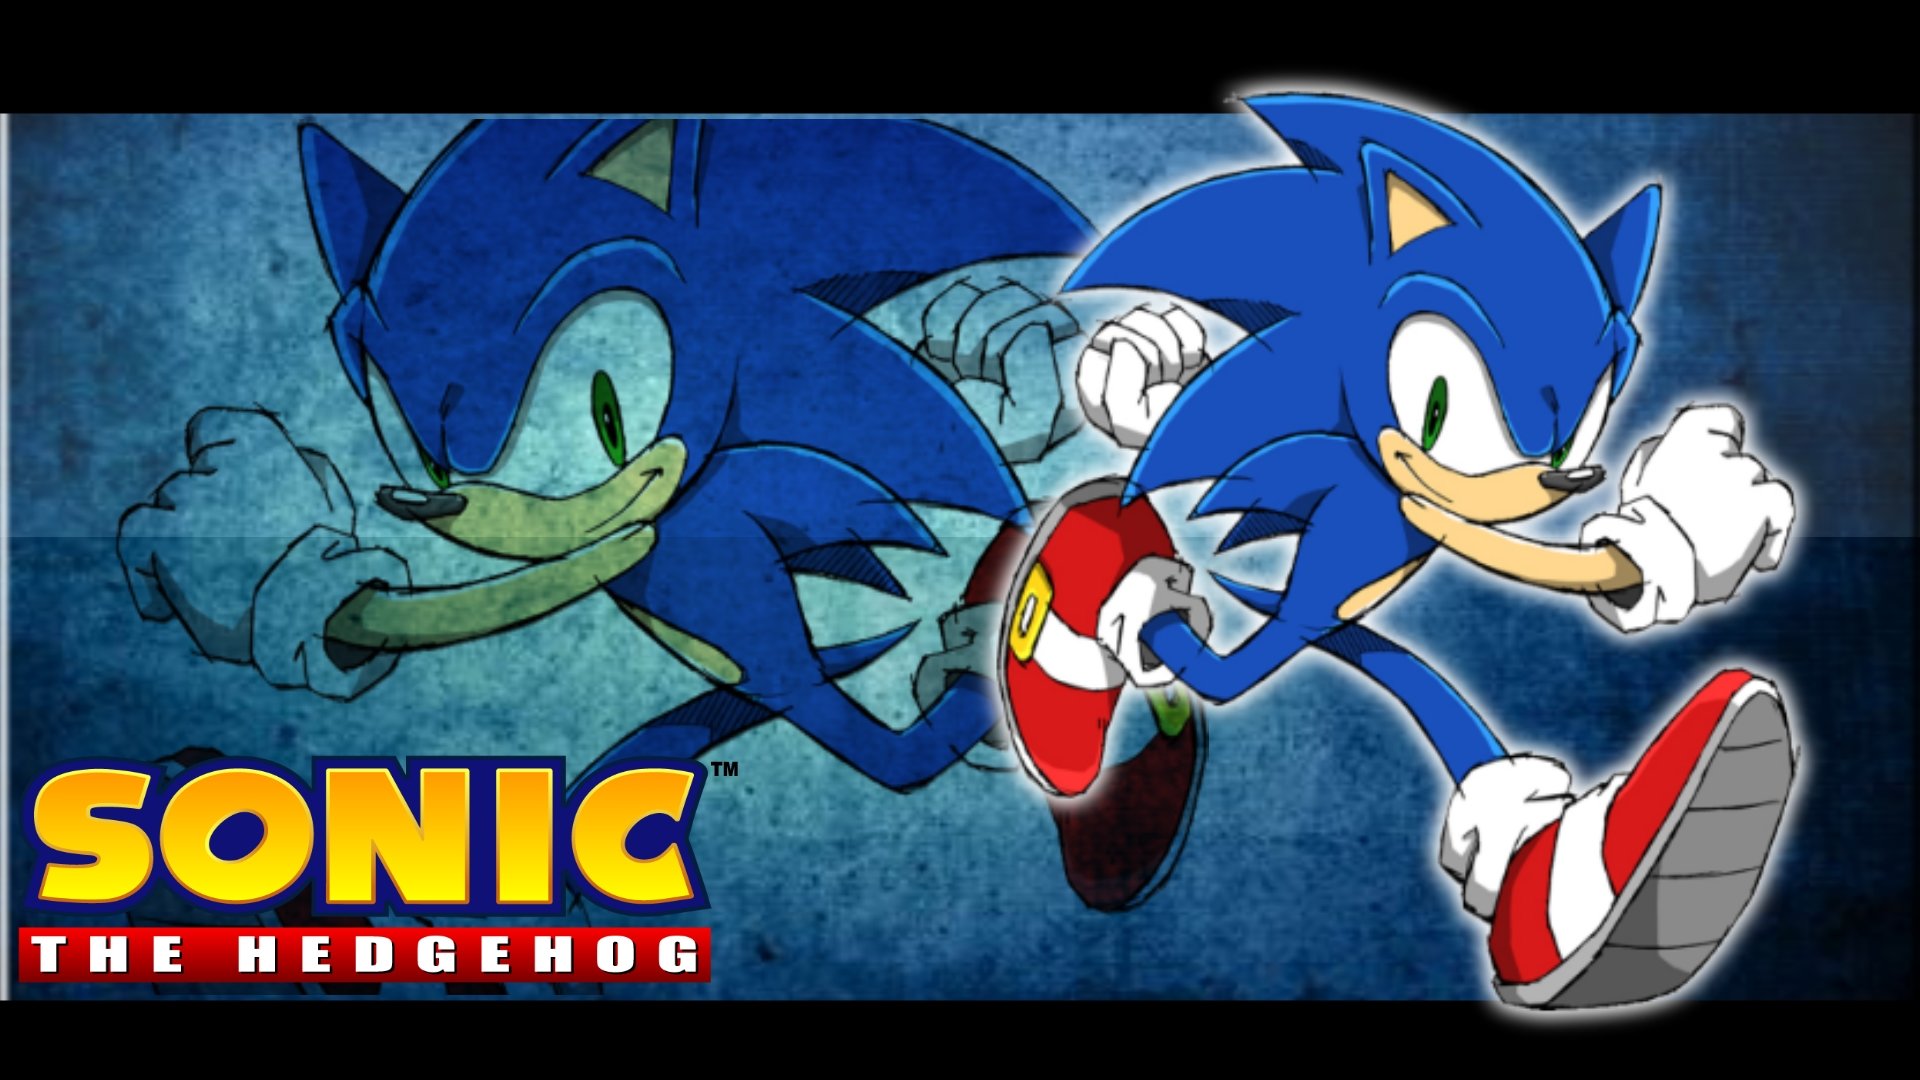 Sonic the Hedgehog fondos de escritorio 1920x1080 Full HD (1080p) de escritorio